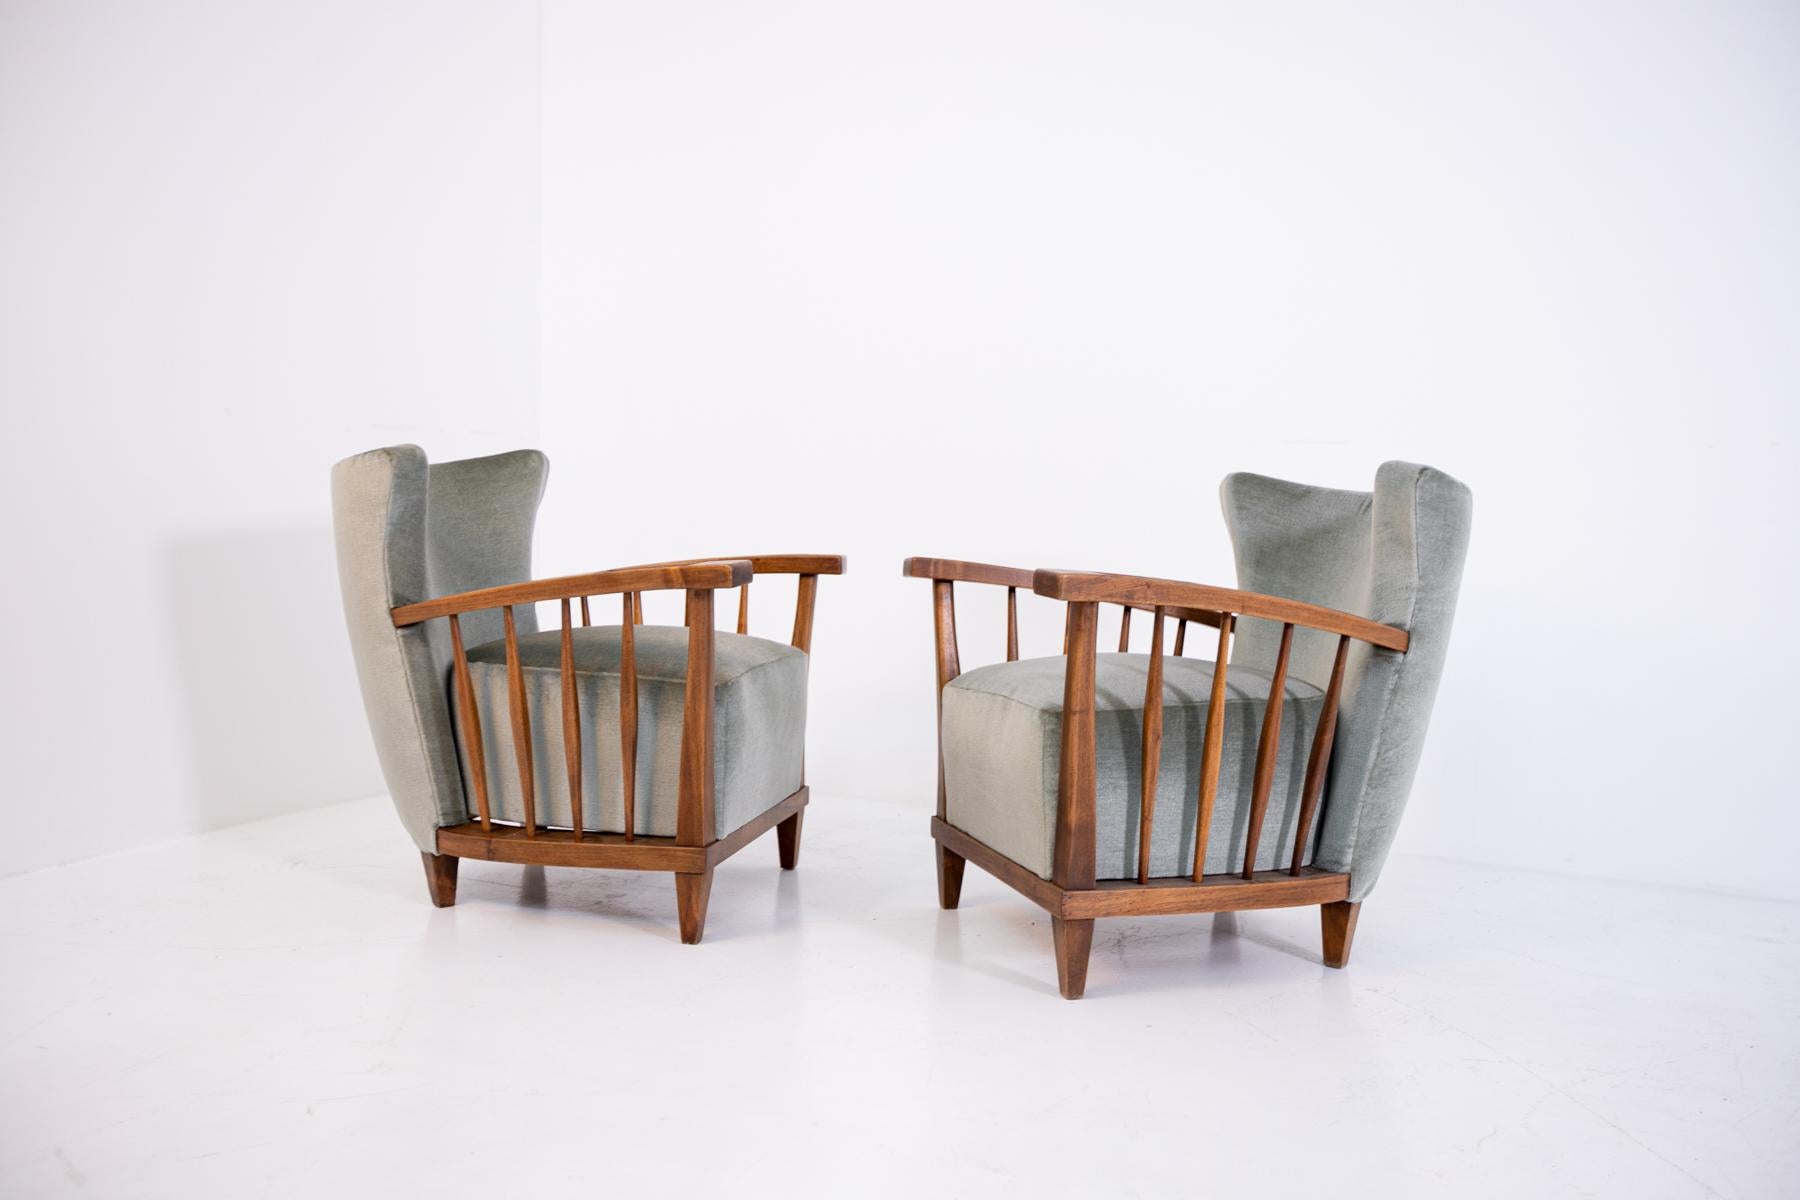 Wunderschönes Paar Sessel von Maurizio Tempestini aus den 1950er Jahren.
Die Struktur der Maurizio Tempestini Sessel wurde aus robustem Walnussholz gefertigt, während der Stoff, mit dem sie bezogen sind, aus grauem Samt besteht.
Die Besonderheit